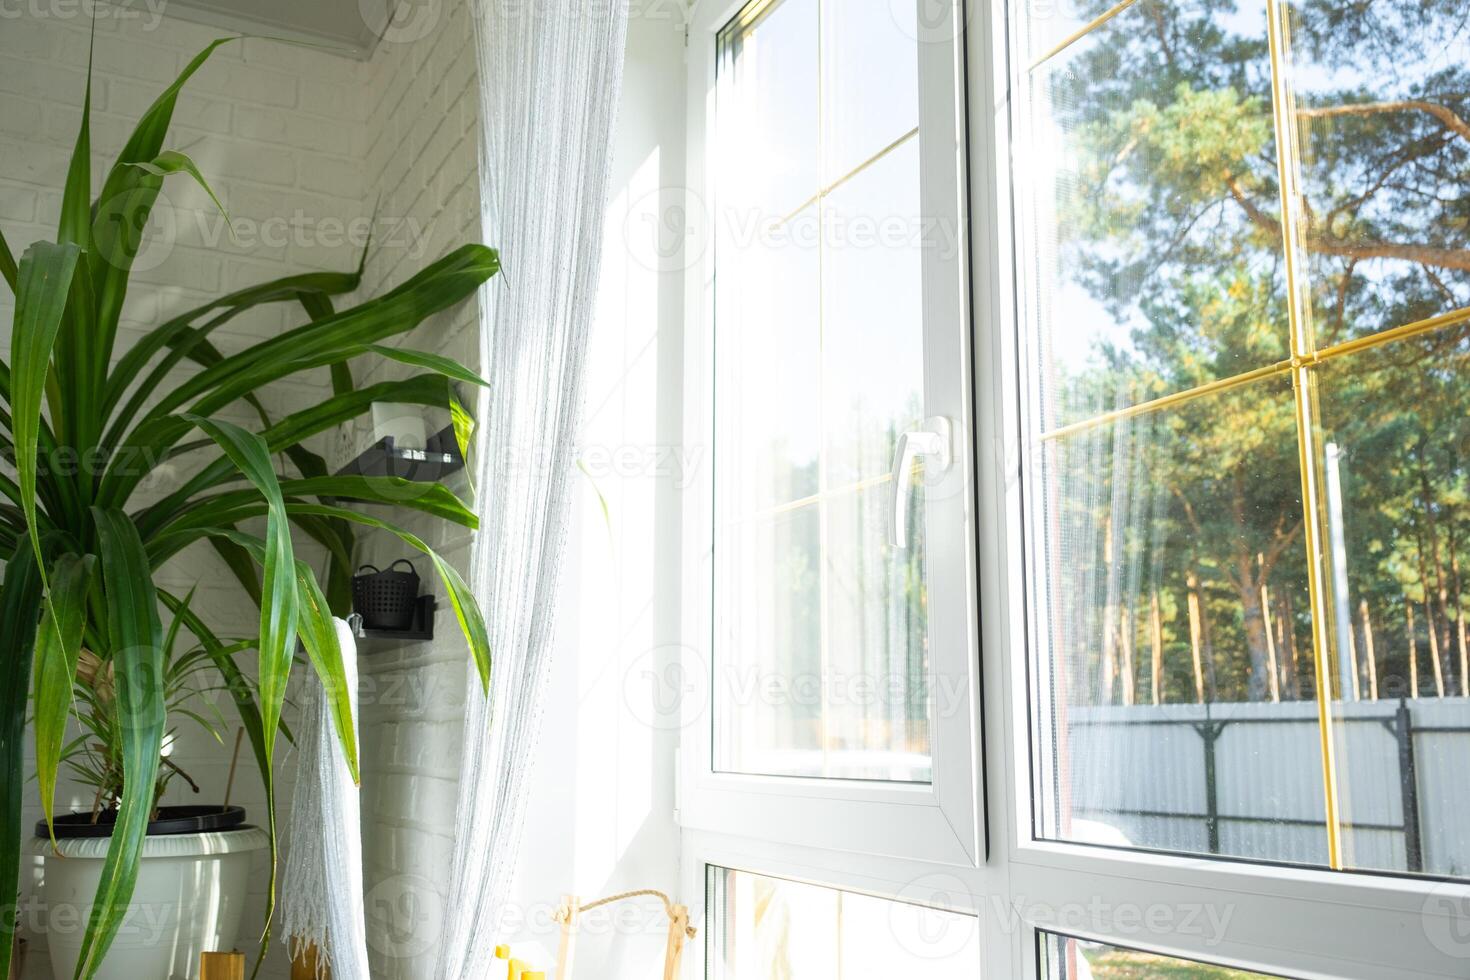 ventana desde dentro el casa el plastico con doble acristalamiento ventana ver fuera de a el soleado bosque - interior salón con en conserva plantas, limpiar vaso después limpieza ventanas, cerrado ventana foto